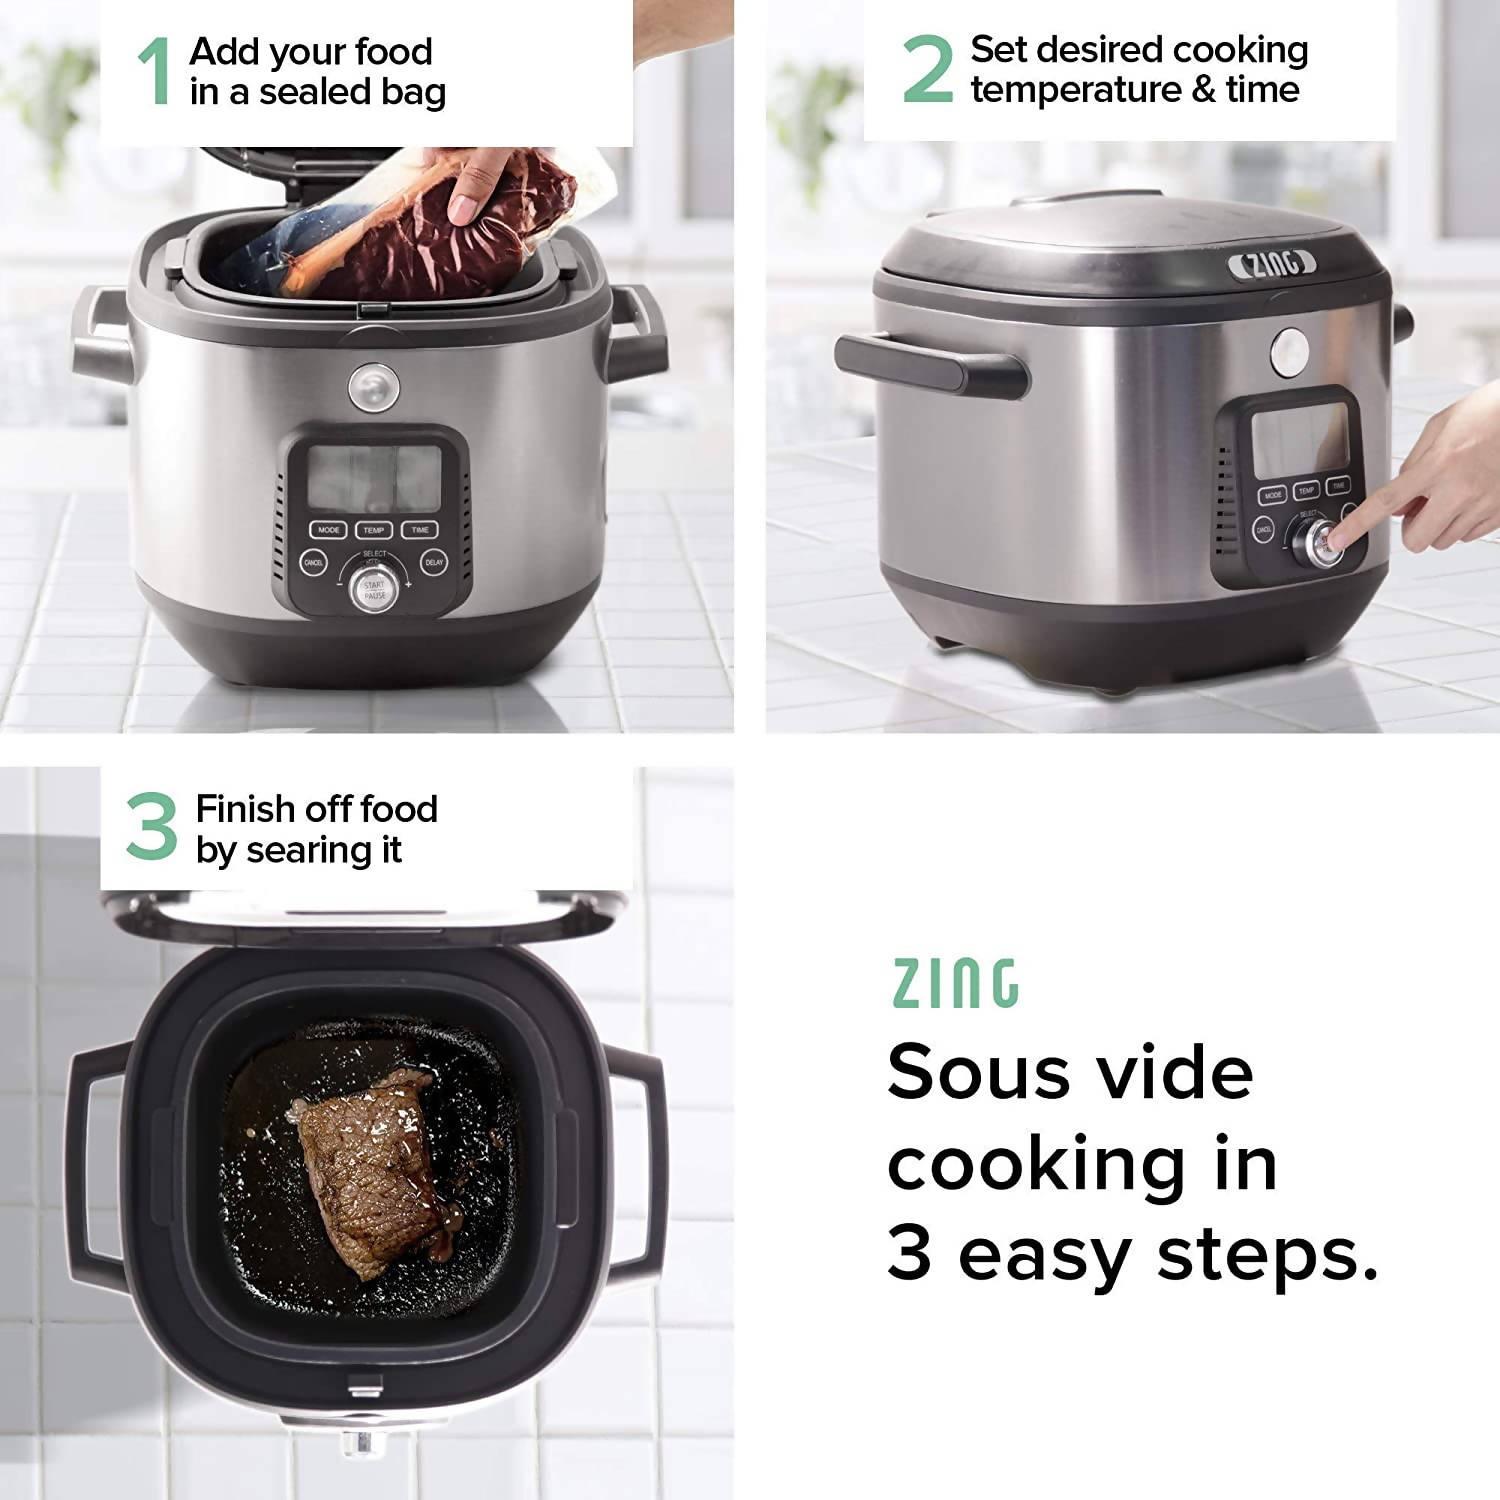 [프로모션] Zing Cook Multi-Cooker with Sous Vide & Slow Cooking Firctions, 6 QT